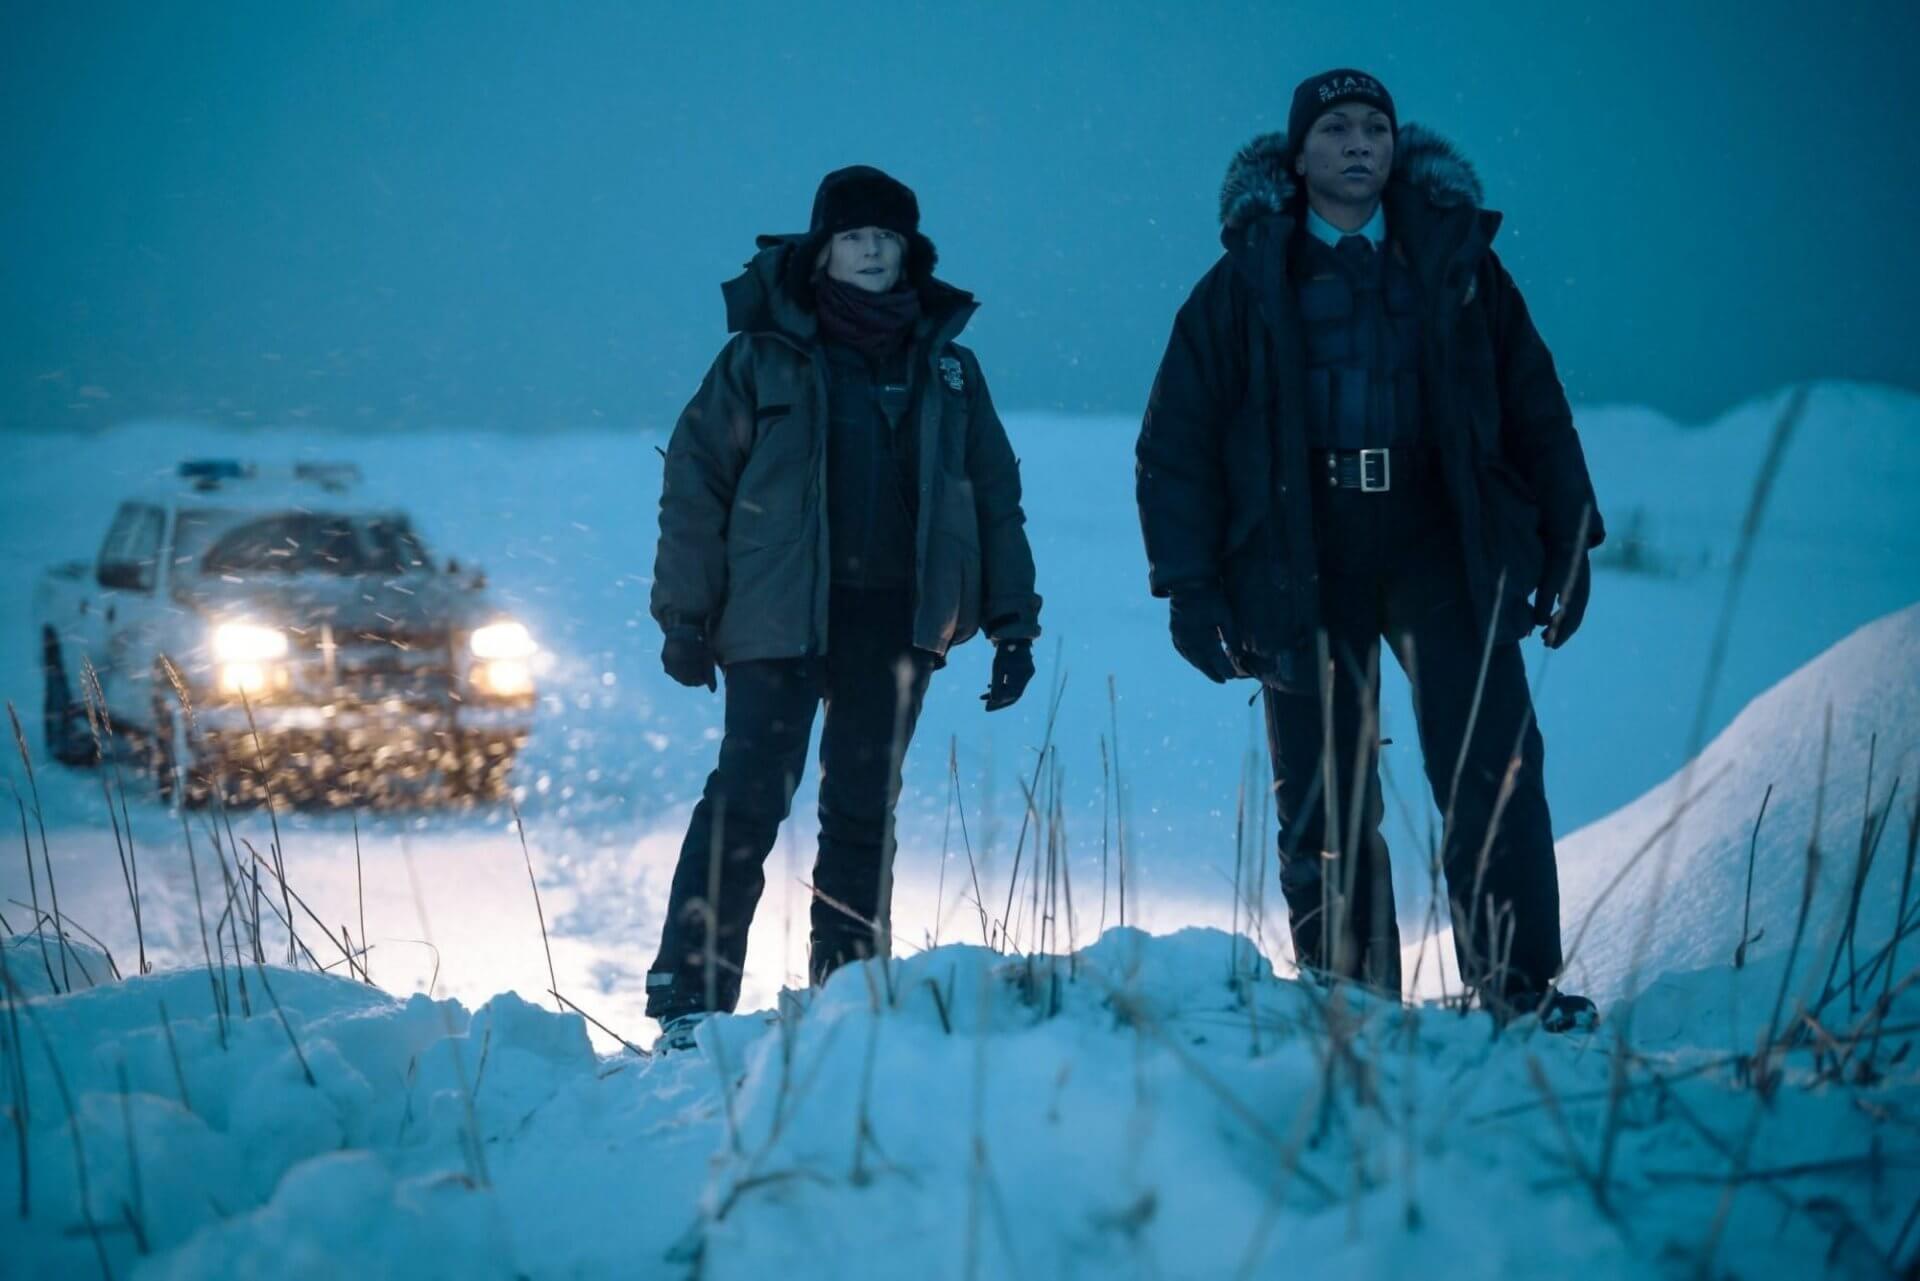 O frio toma conta da quarta temporada de True Detective (Crédito: HBO)